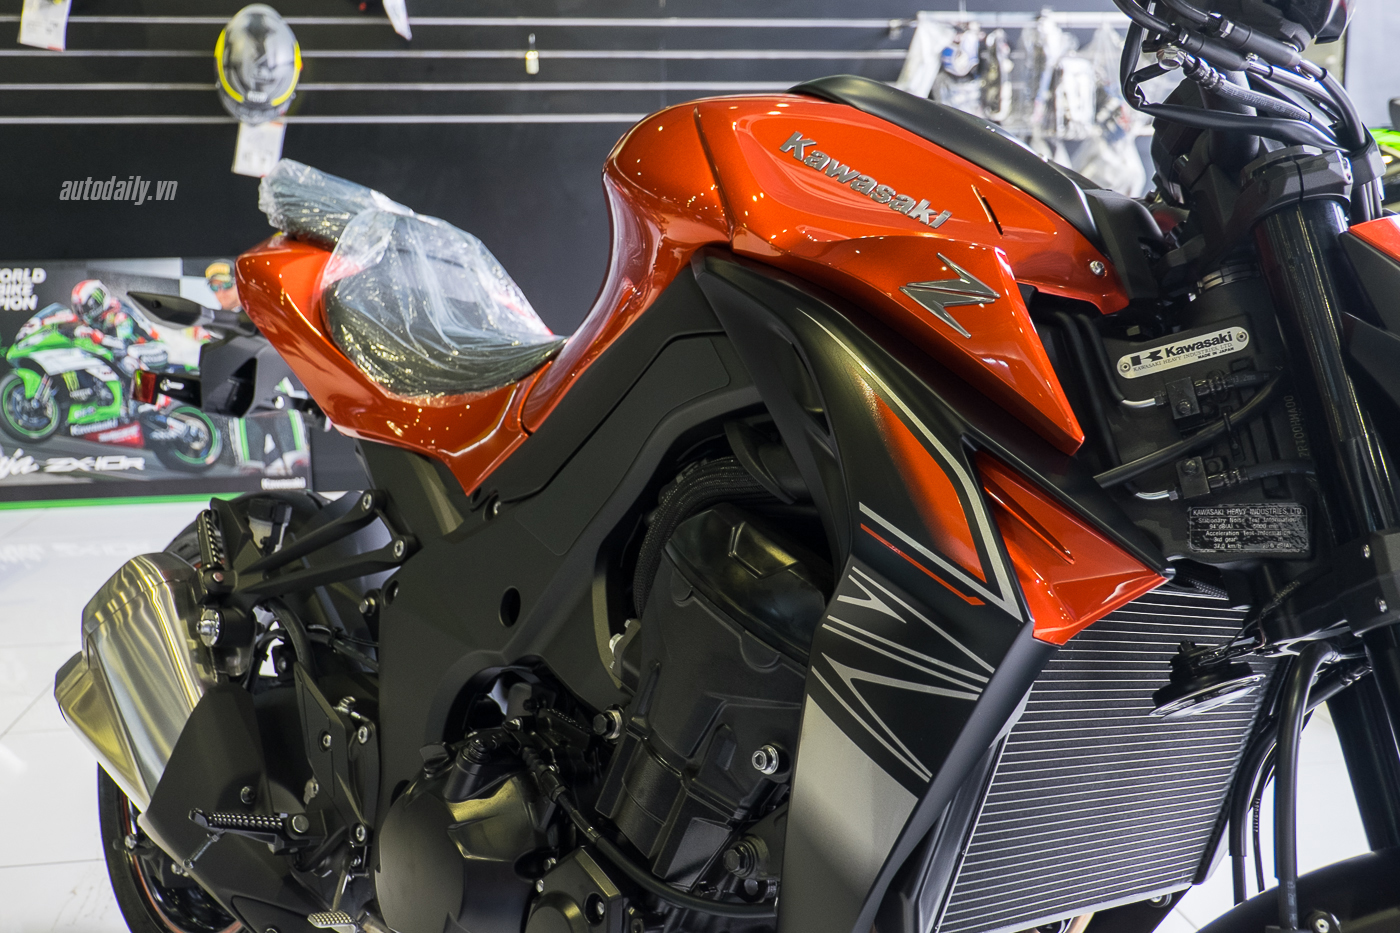 Xem thêm ảnh mẫu naked-bike Kawasaki Z1000 2017